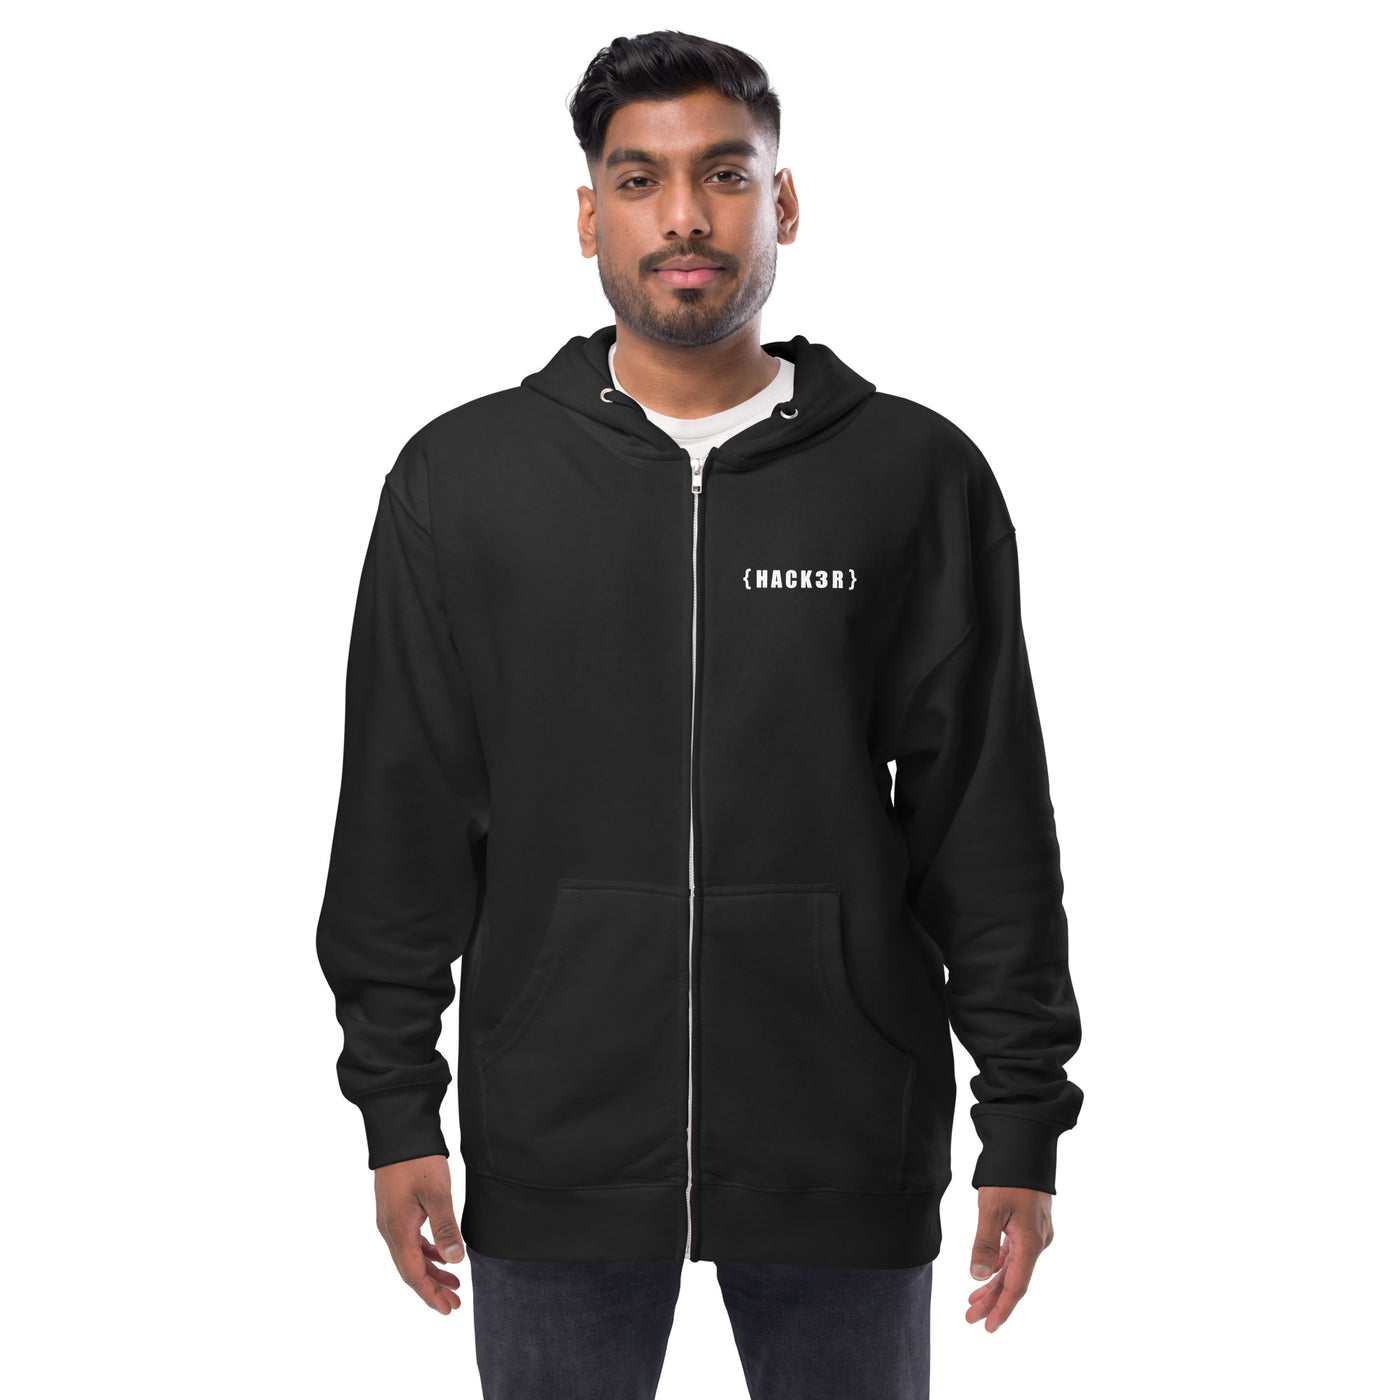 Hack3r - Unisex fleece zip up hoodie